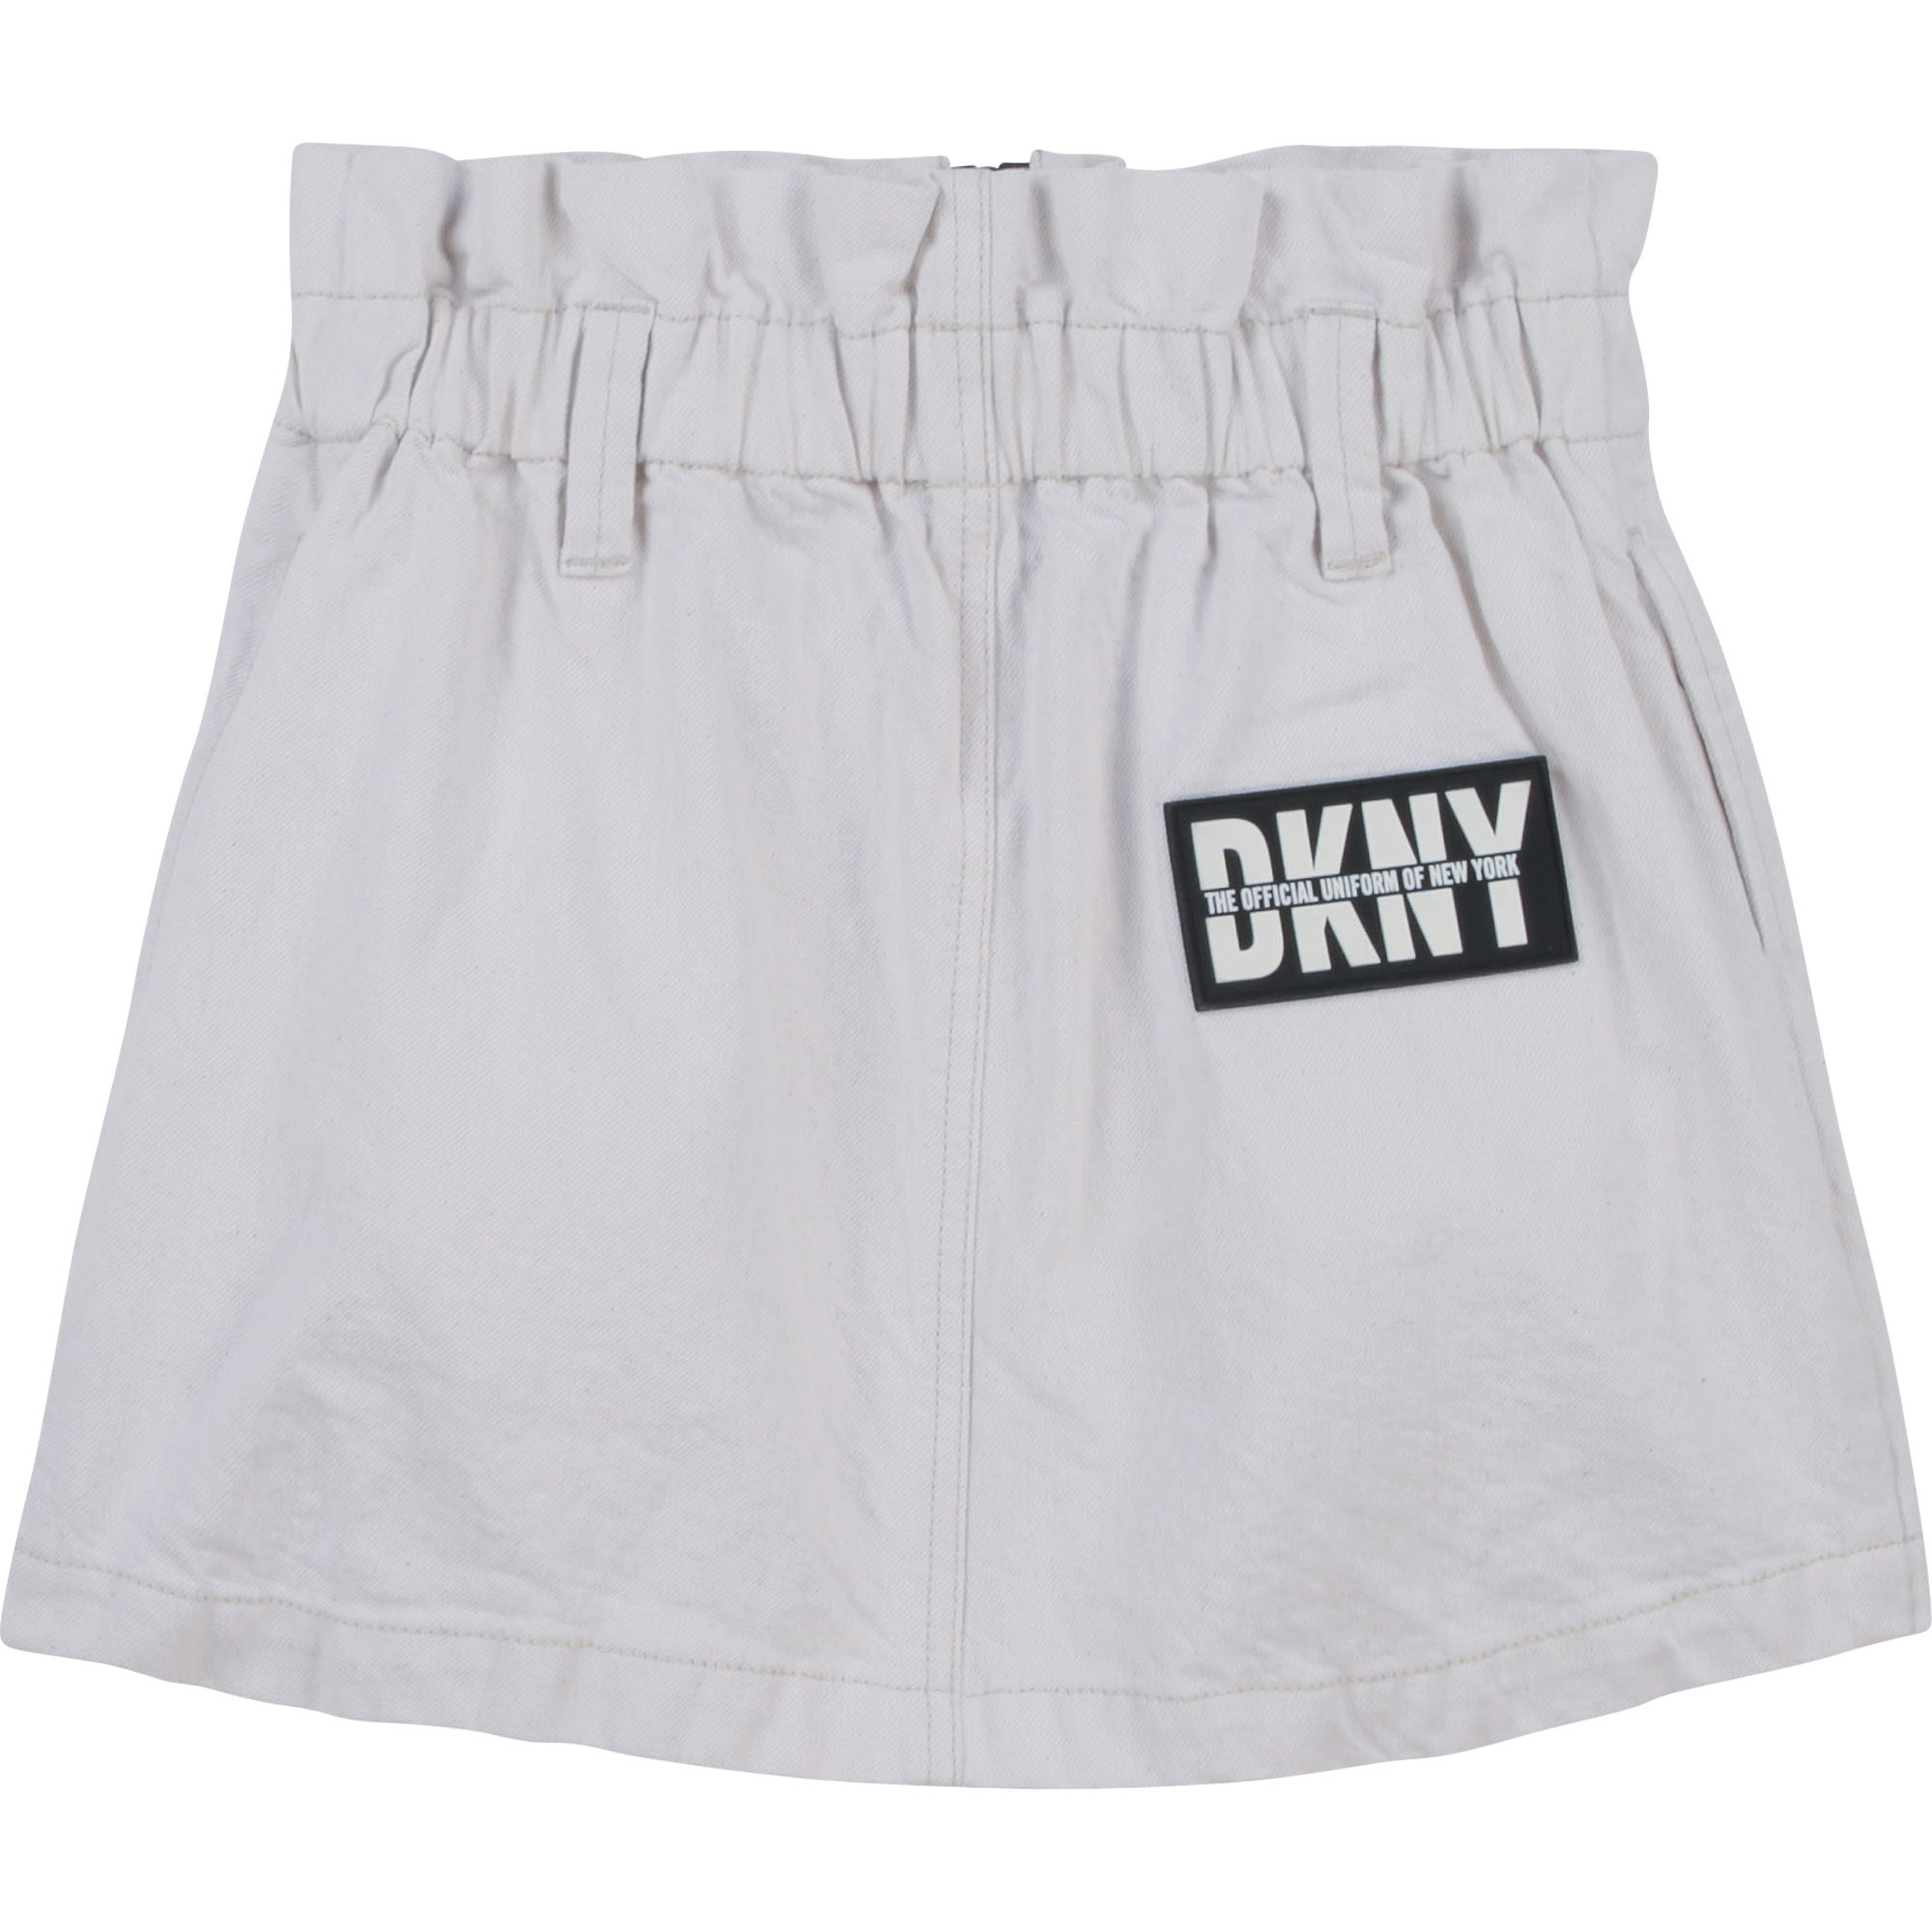 Falda de sarga con logo marca DKNY para NIÑA